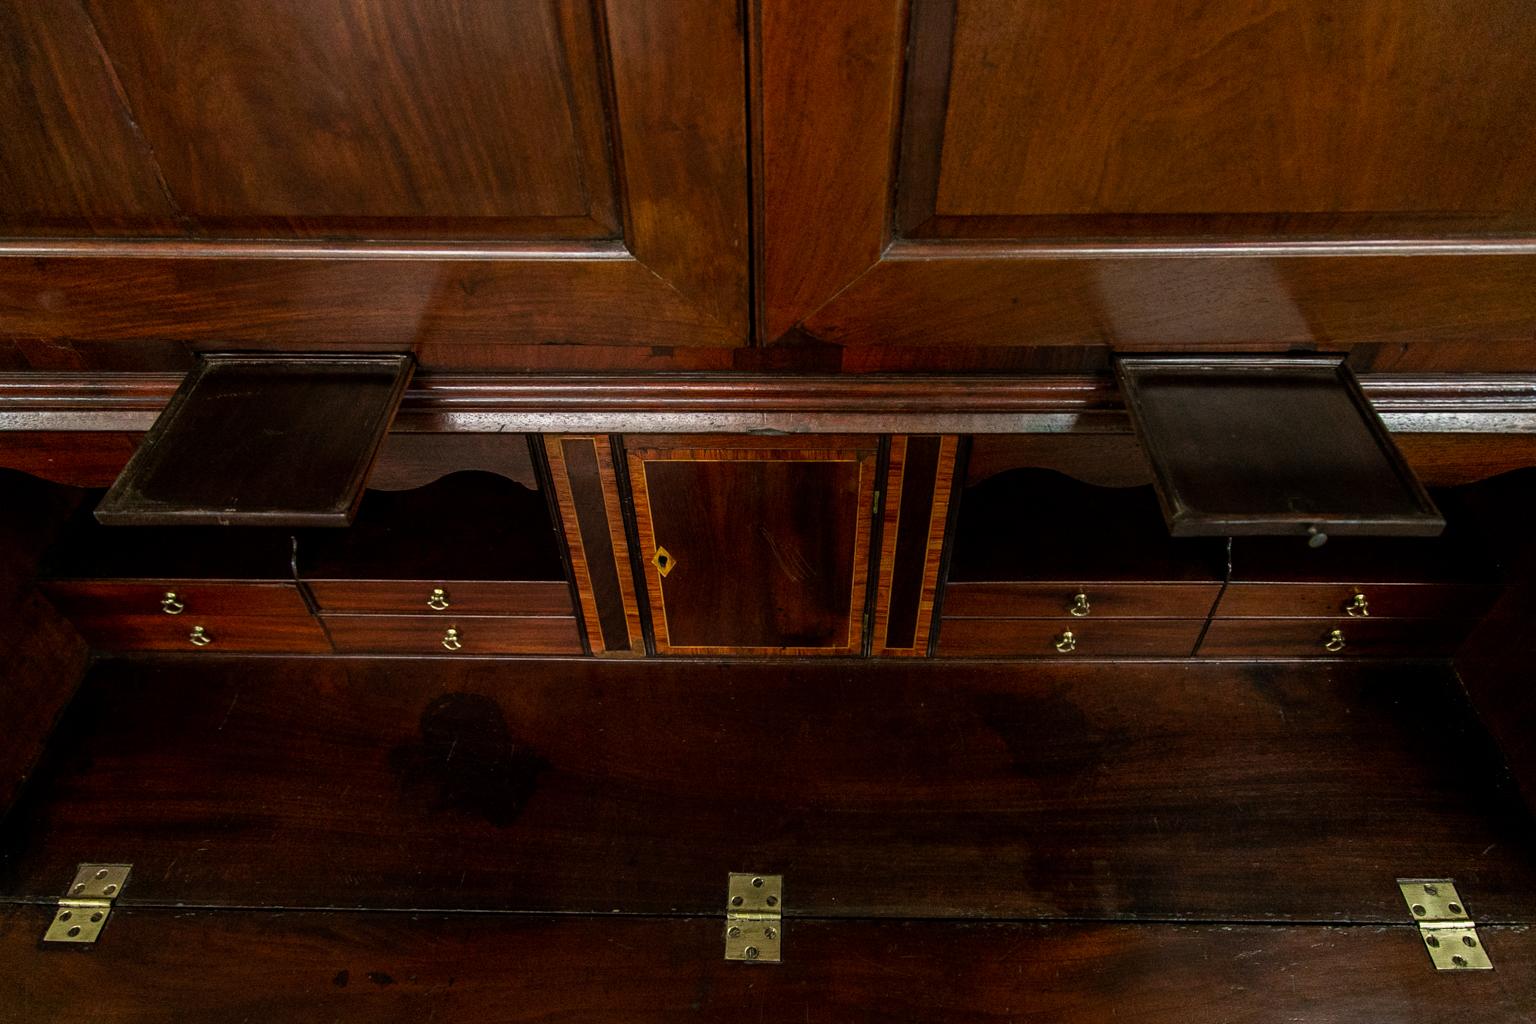 Die Oberseite dieses Sekretärs hat geformte, erhabene Paneele. Es hat das Originalschloss mit vier Hebeln und Schlüssel. Die Platte ist vollständig mit Schubladen und Fächern ausgestattet. Das Innere hat eine zentrale Prospektschublade, die mit